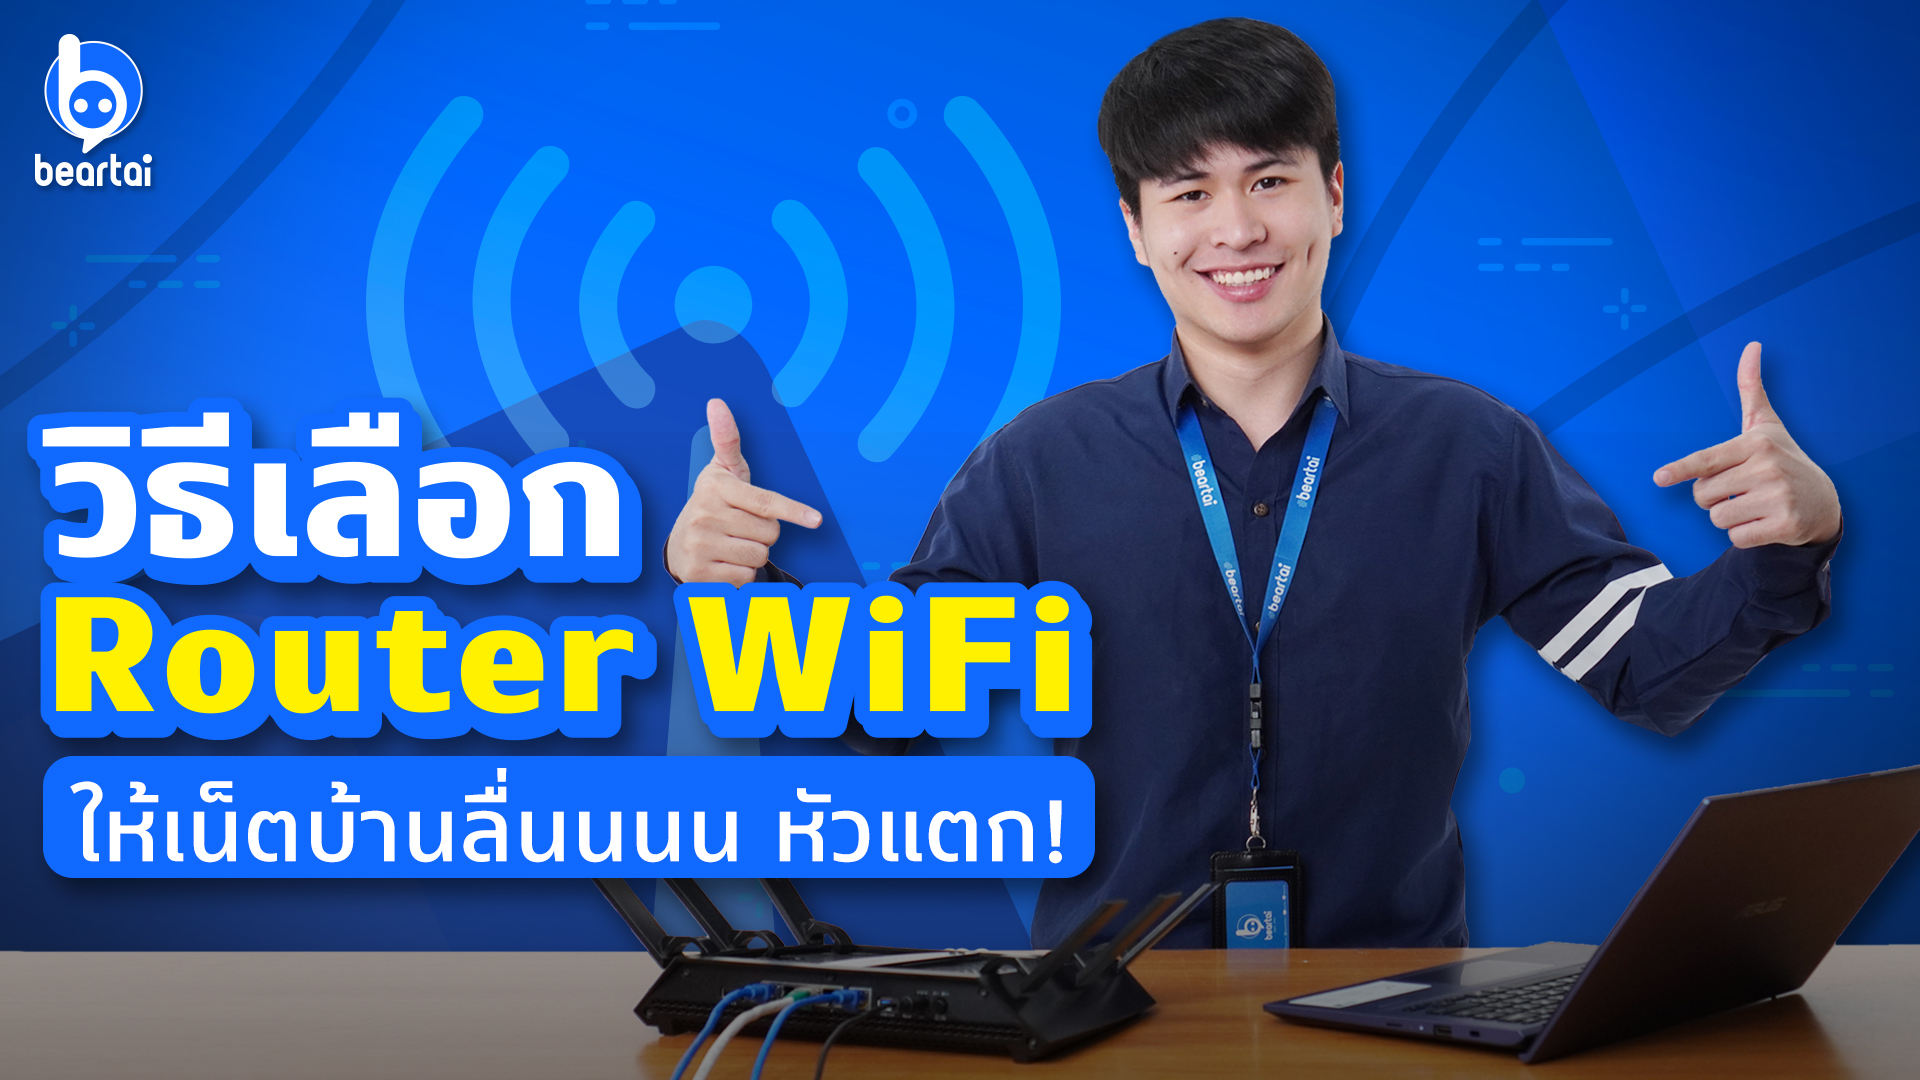 หมดปัญหาเน็ตบ้านช้าเป็นเต่า #beartai ขอแนะนำวิธีเลือก Router WiFi ให้ลื่นหัวแตก!!